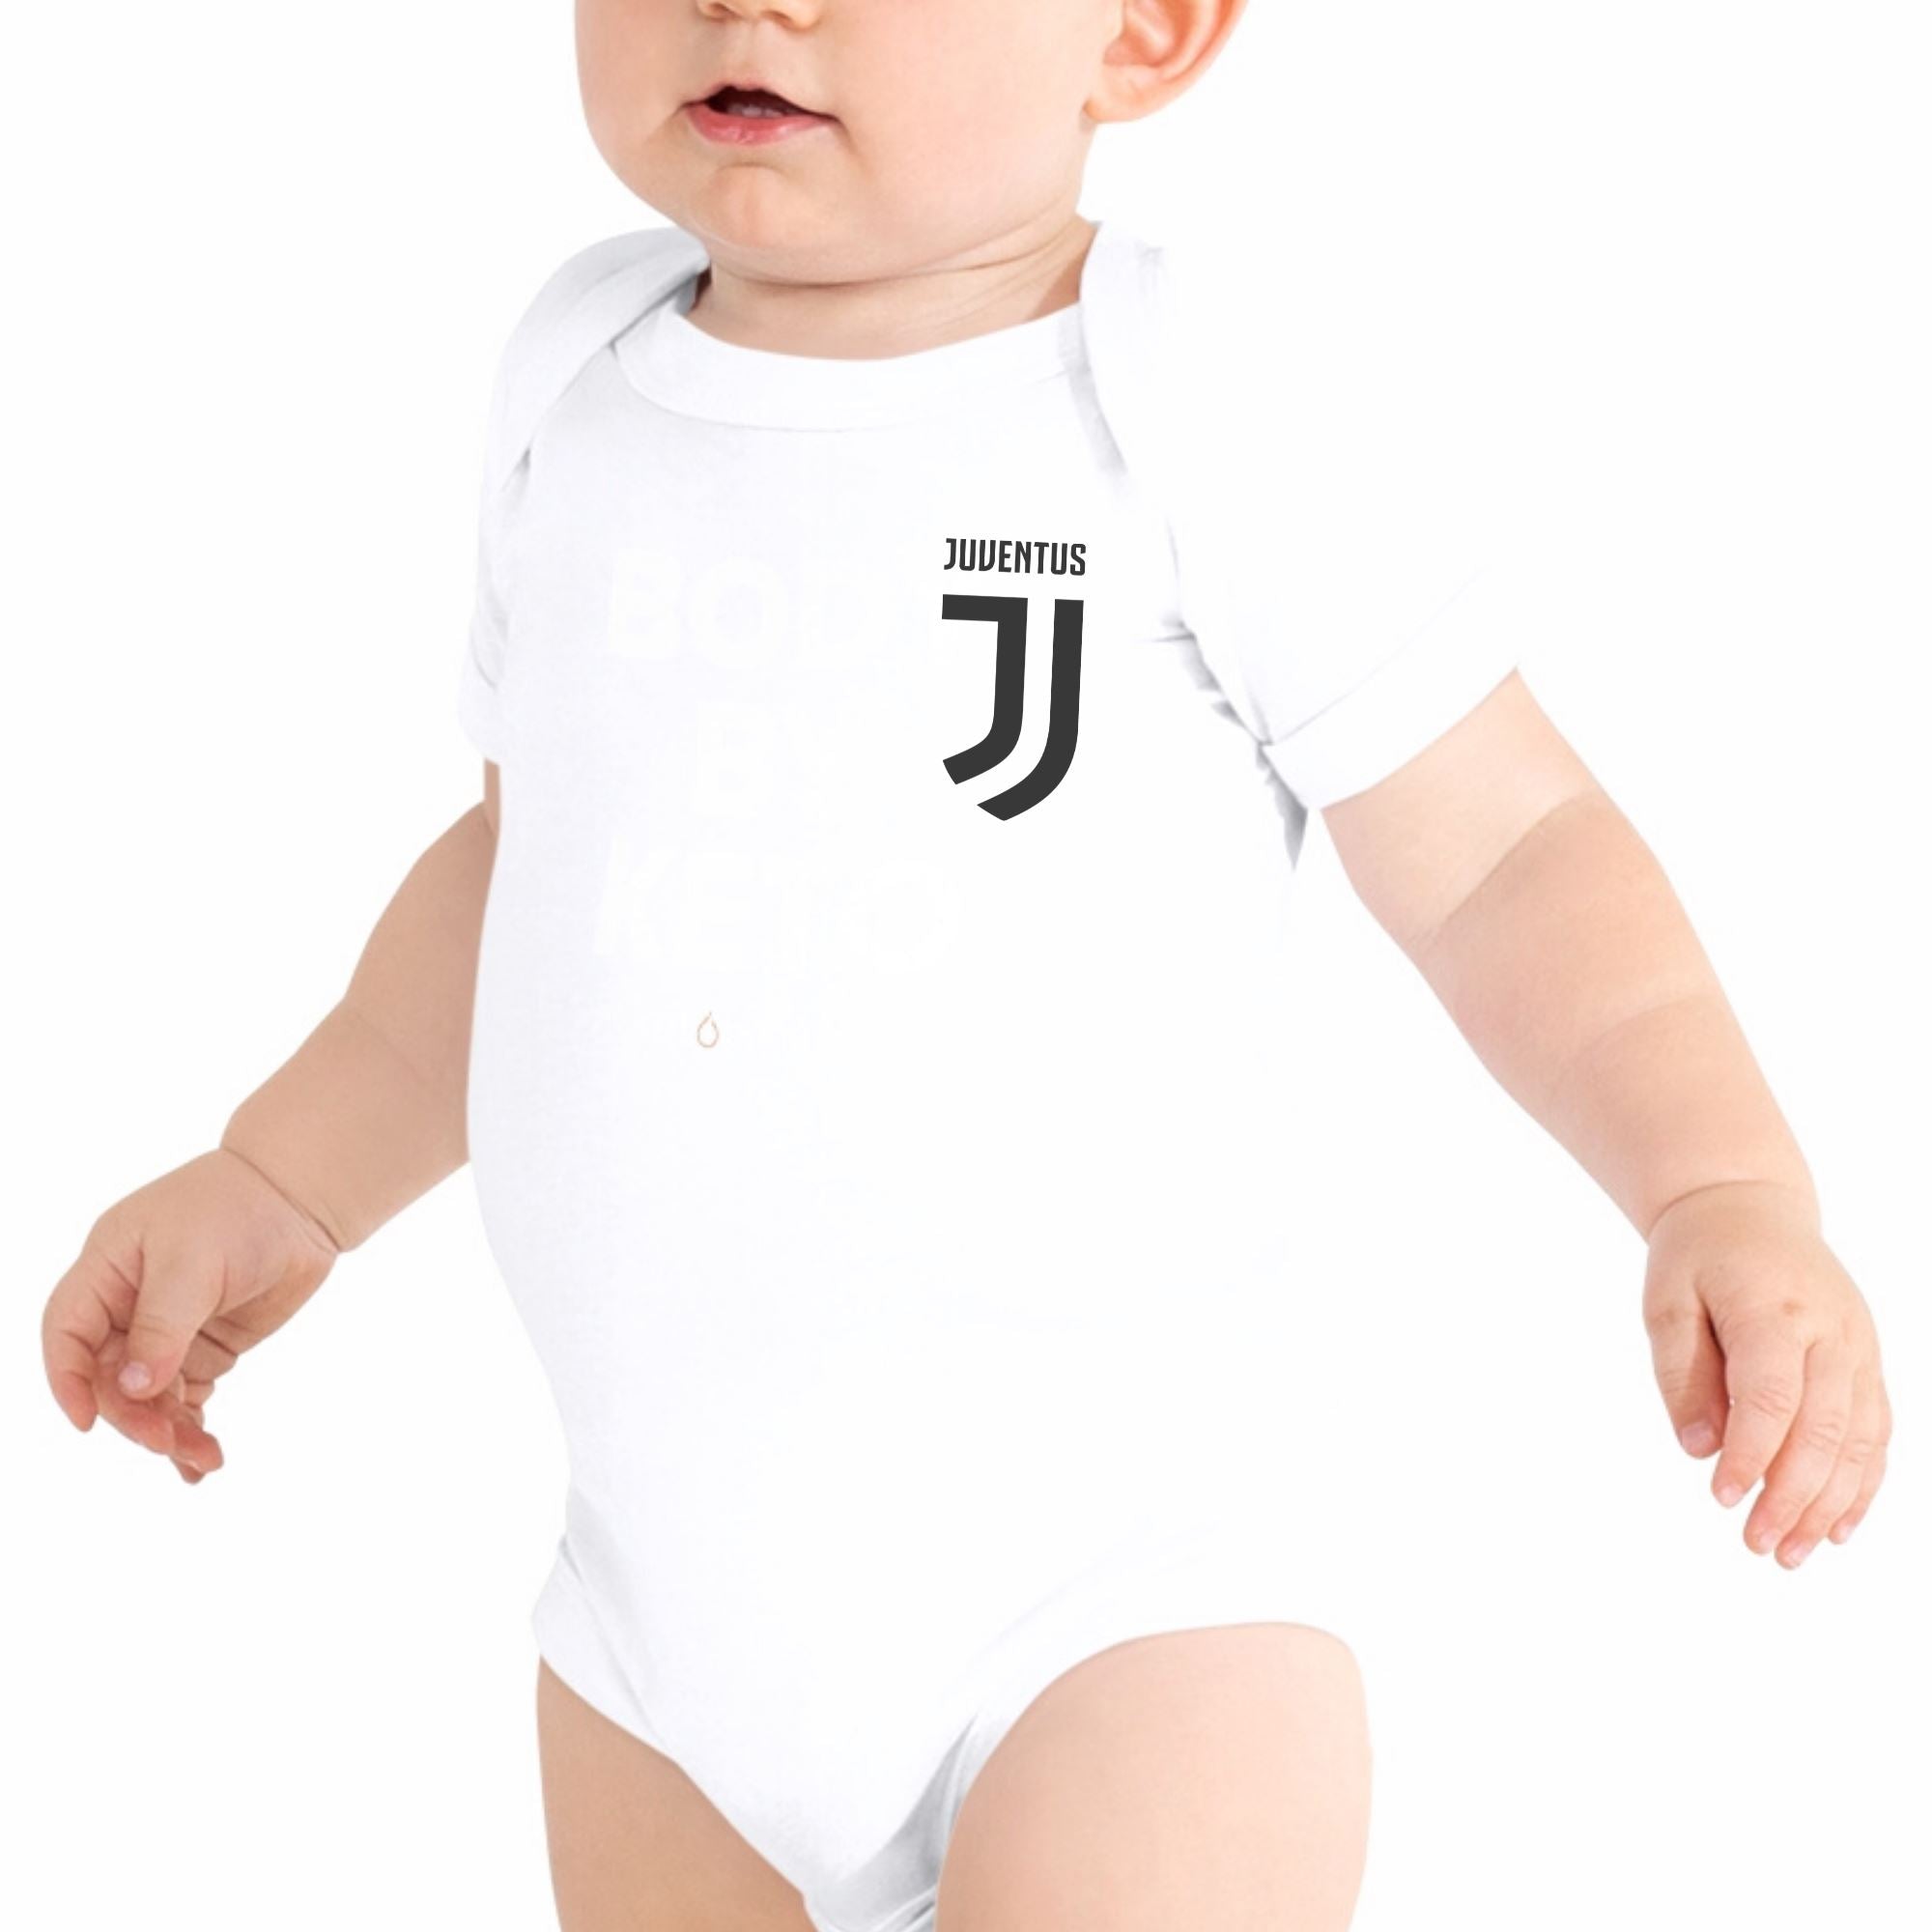 Juventus Baby Bodysuit - ITASPORT